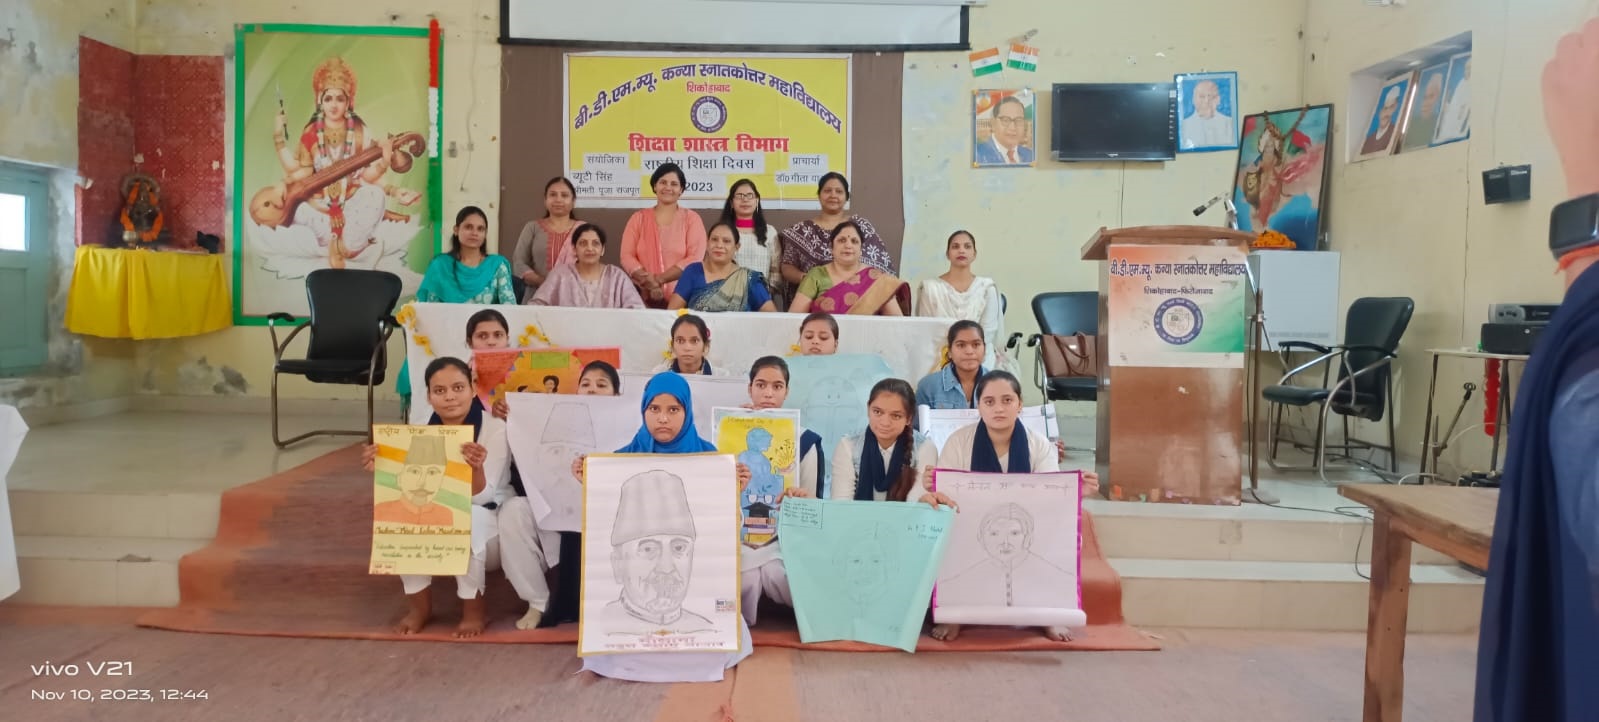 मौलाना कलाम की जयंती पर हुआ शिक्षा दिवस कार्यक्रम